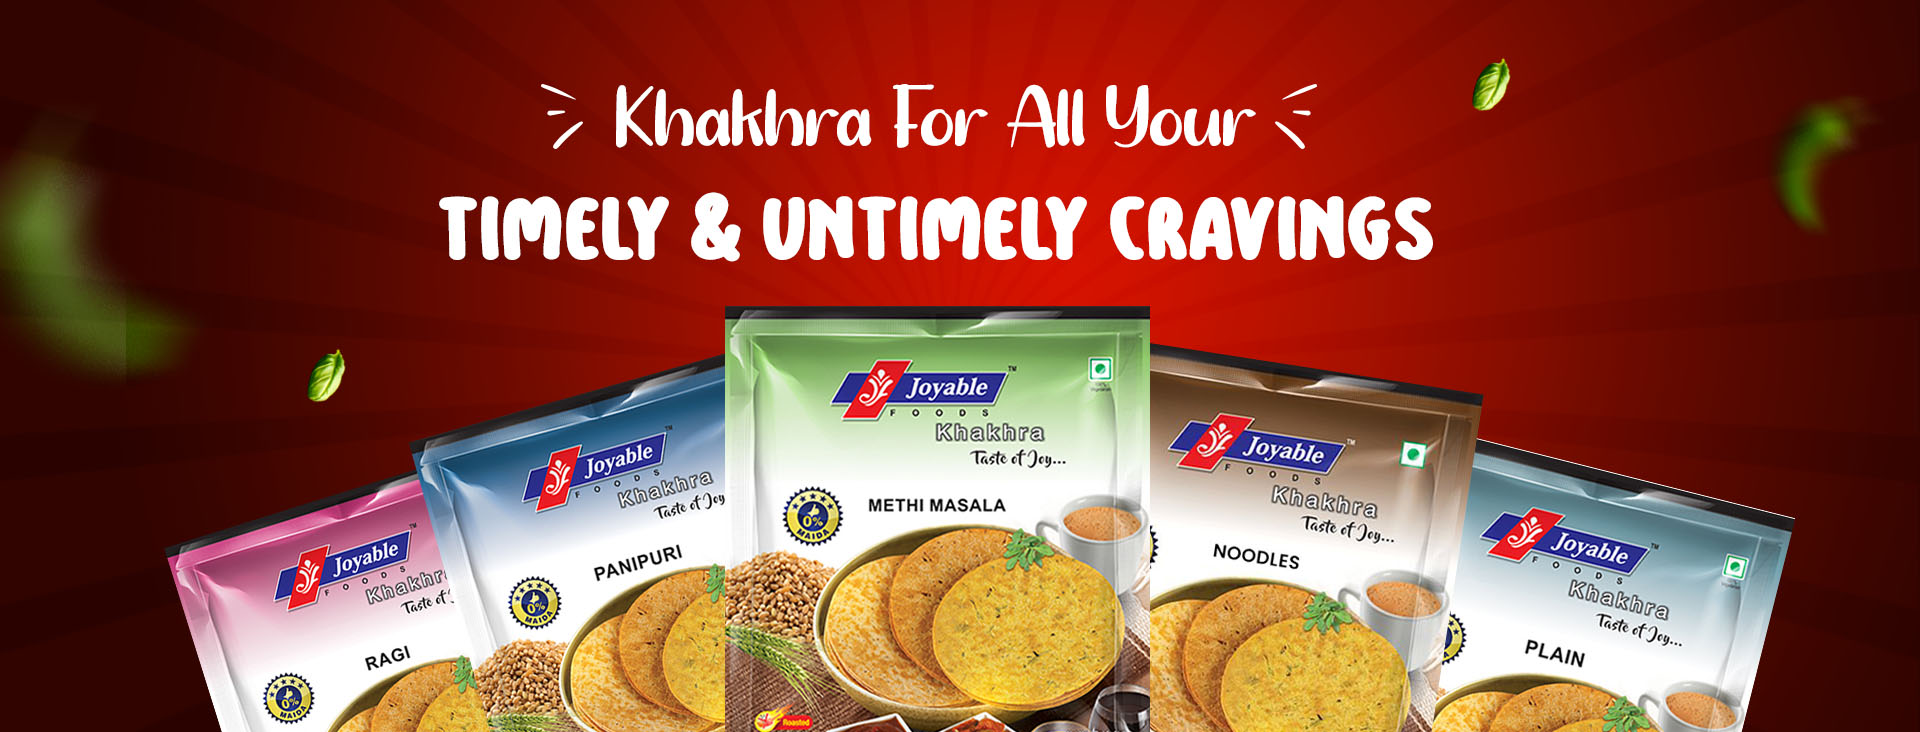 Enjoy snacking time with tasty khakhras